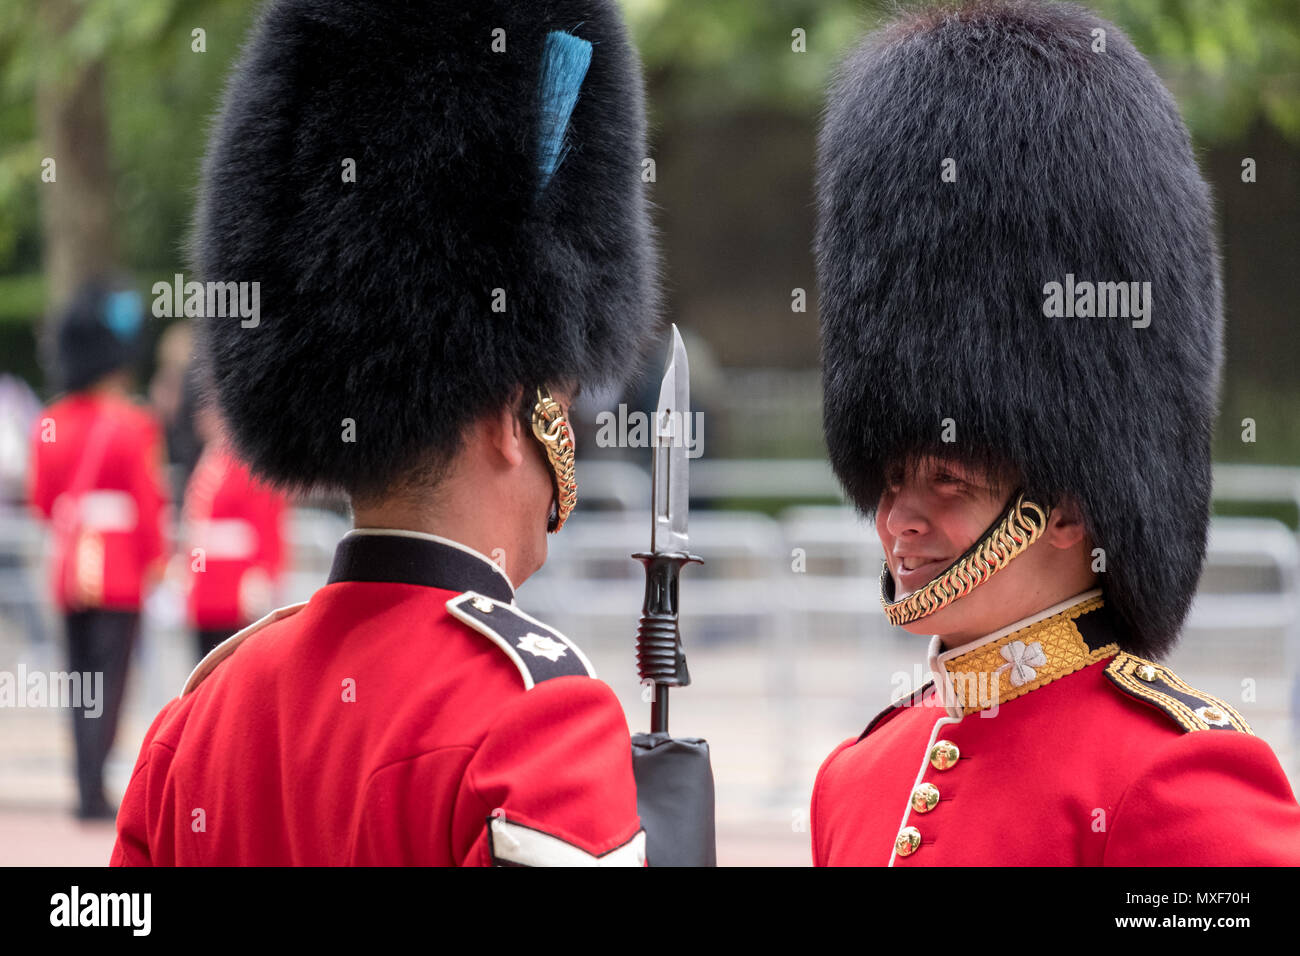 Les soldats de la Garde royale portant l'uniforme rouge et noir et son  bonnet chapeaux partageant une blague pendant la parade la parade militaire  de couleur, Londres UK Photo Stock - Alamy